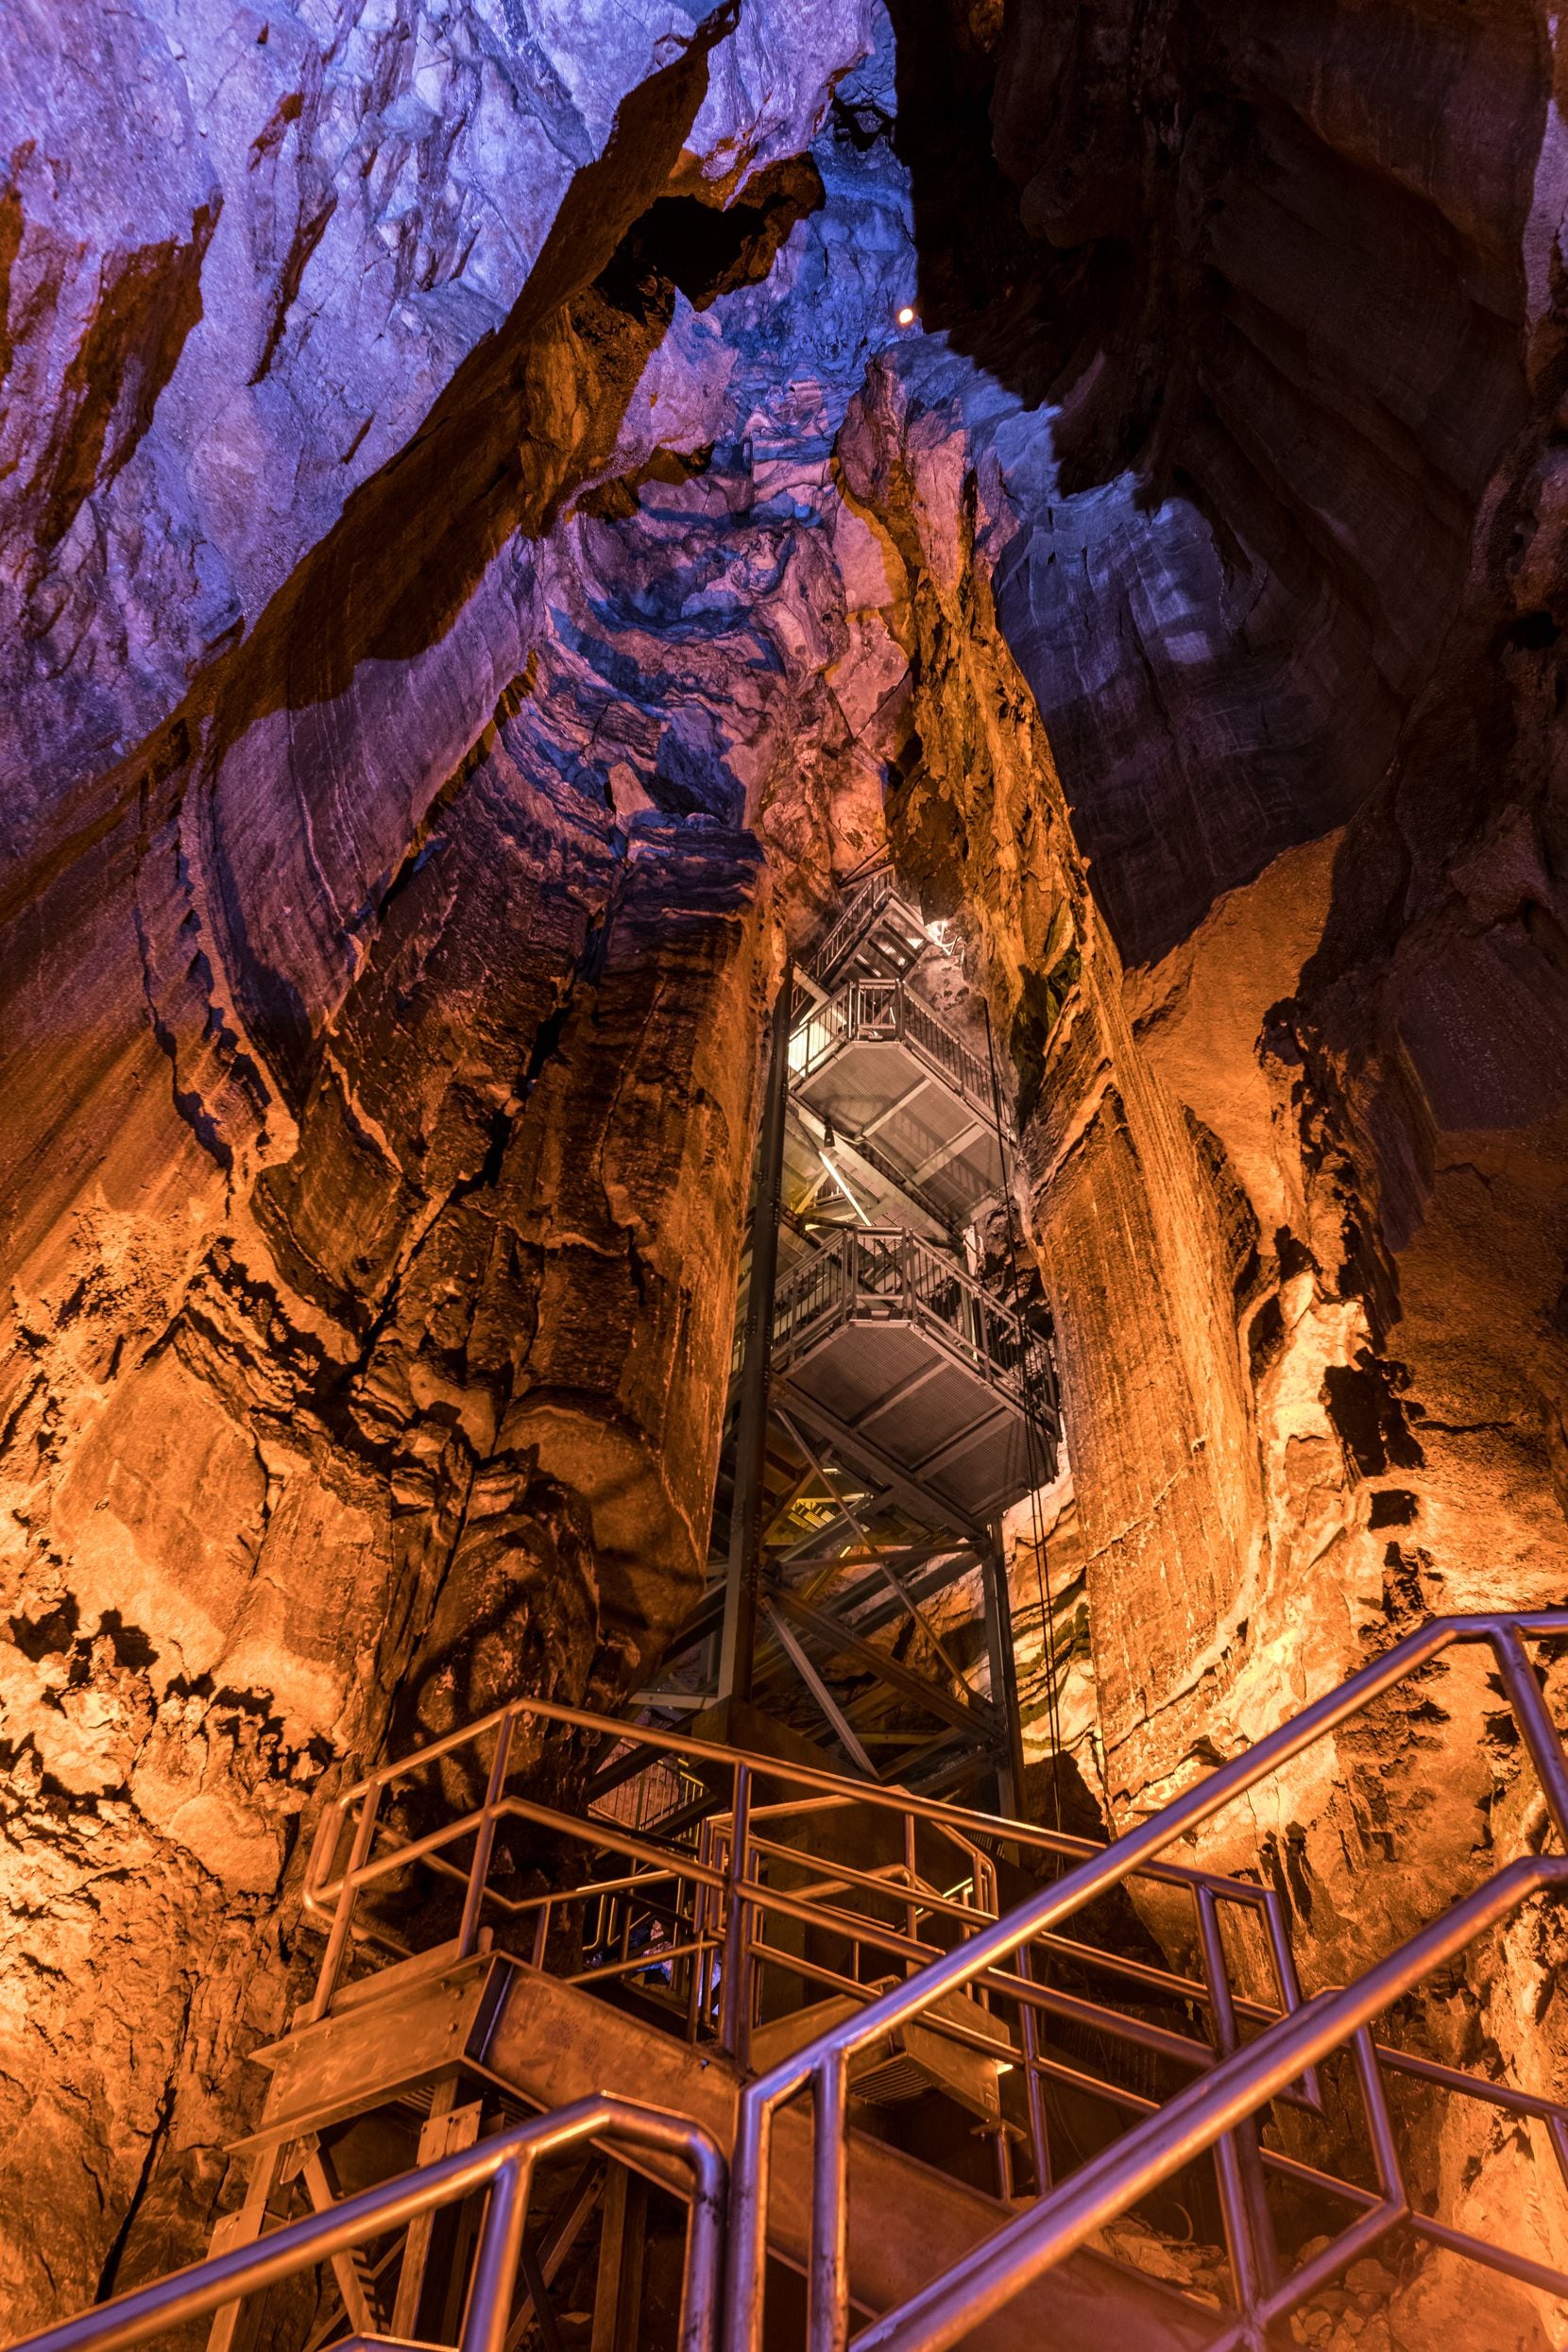 Meet Kentucky’s underground rock star Mammoth Cave National Park